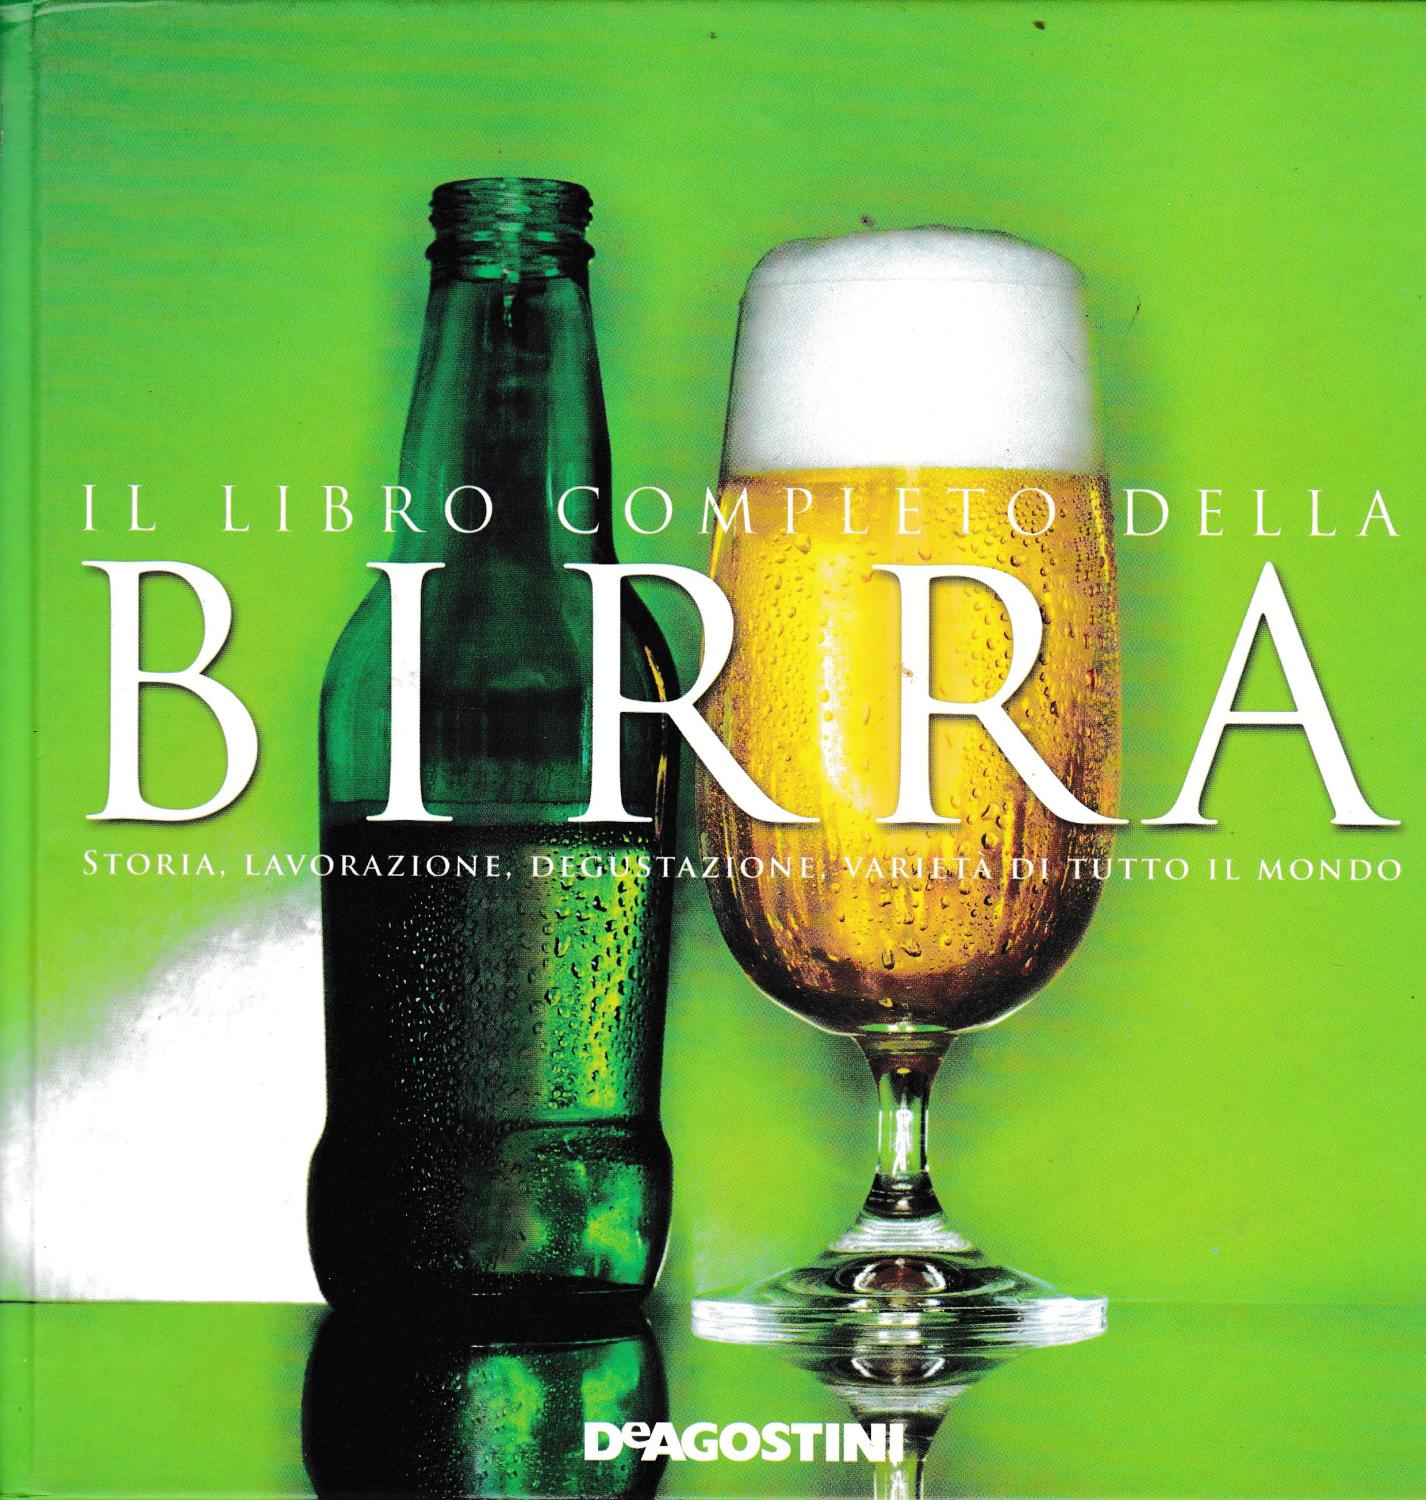 Il libro completo della birra. Storia, lavorazione, degustazione, varietà di tutto il mondo. - aa. vv.